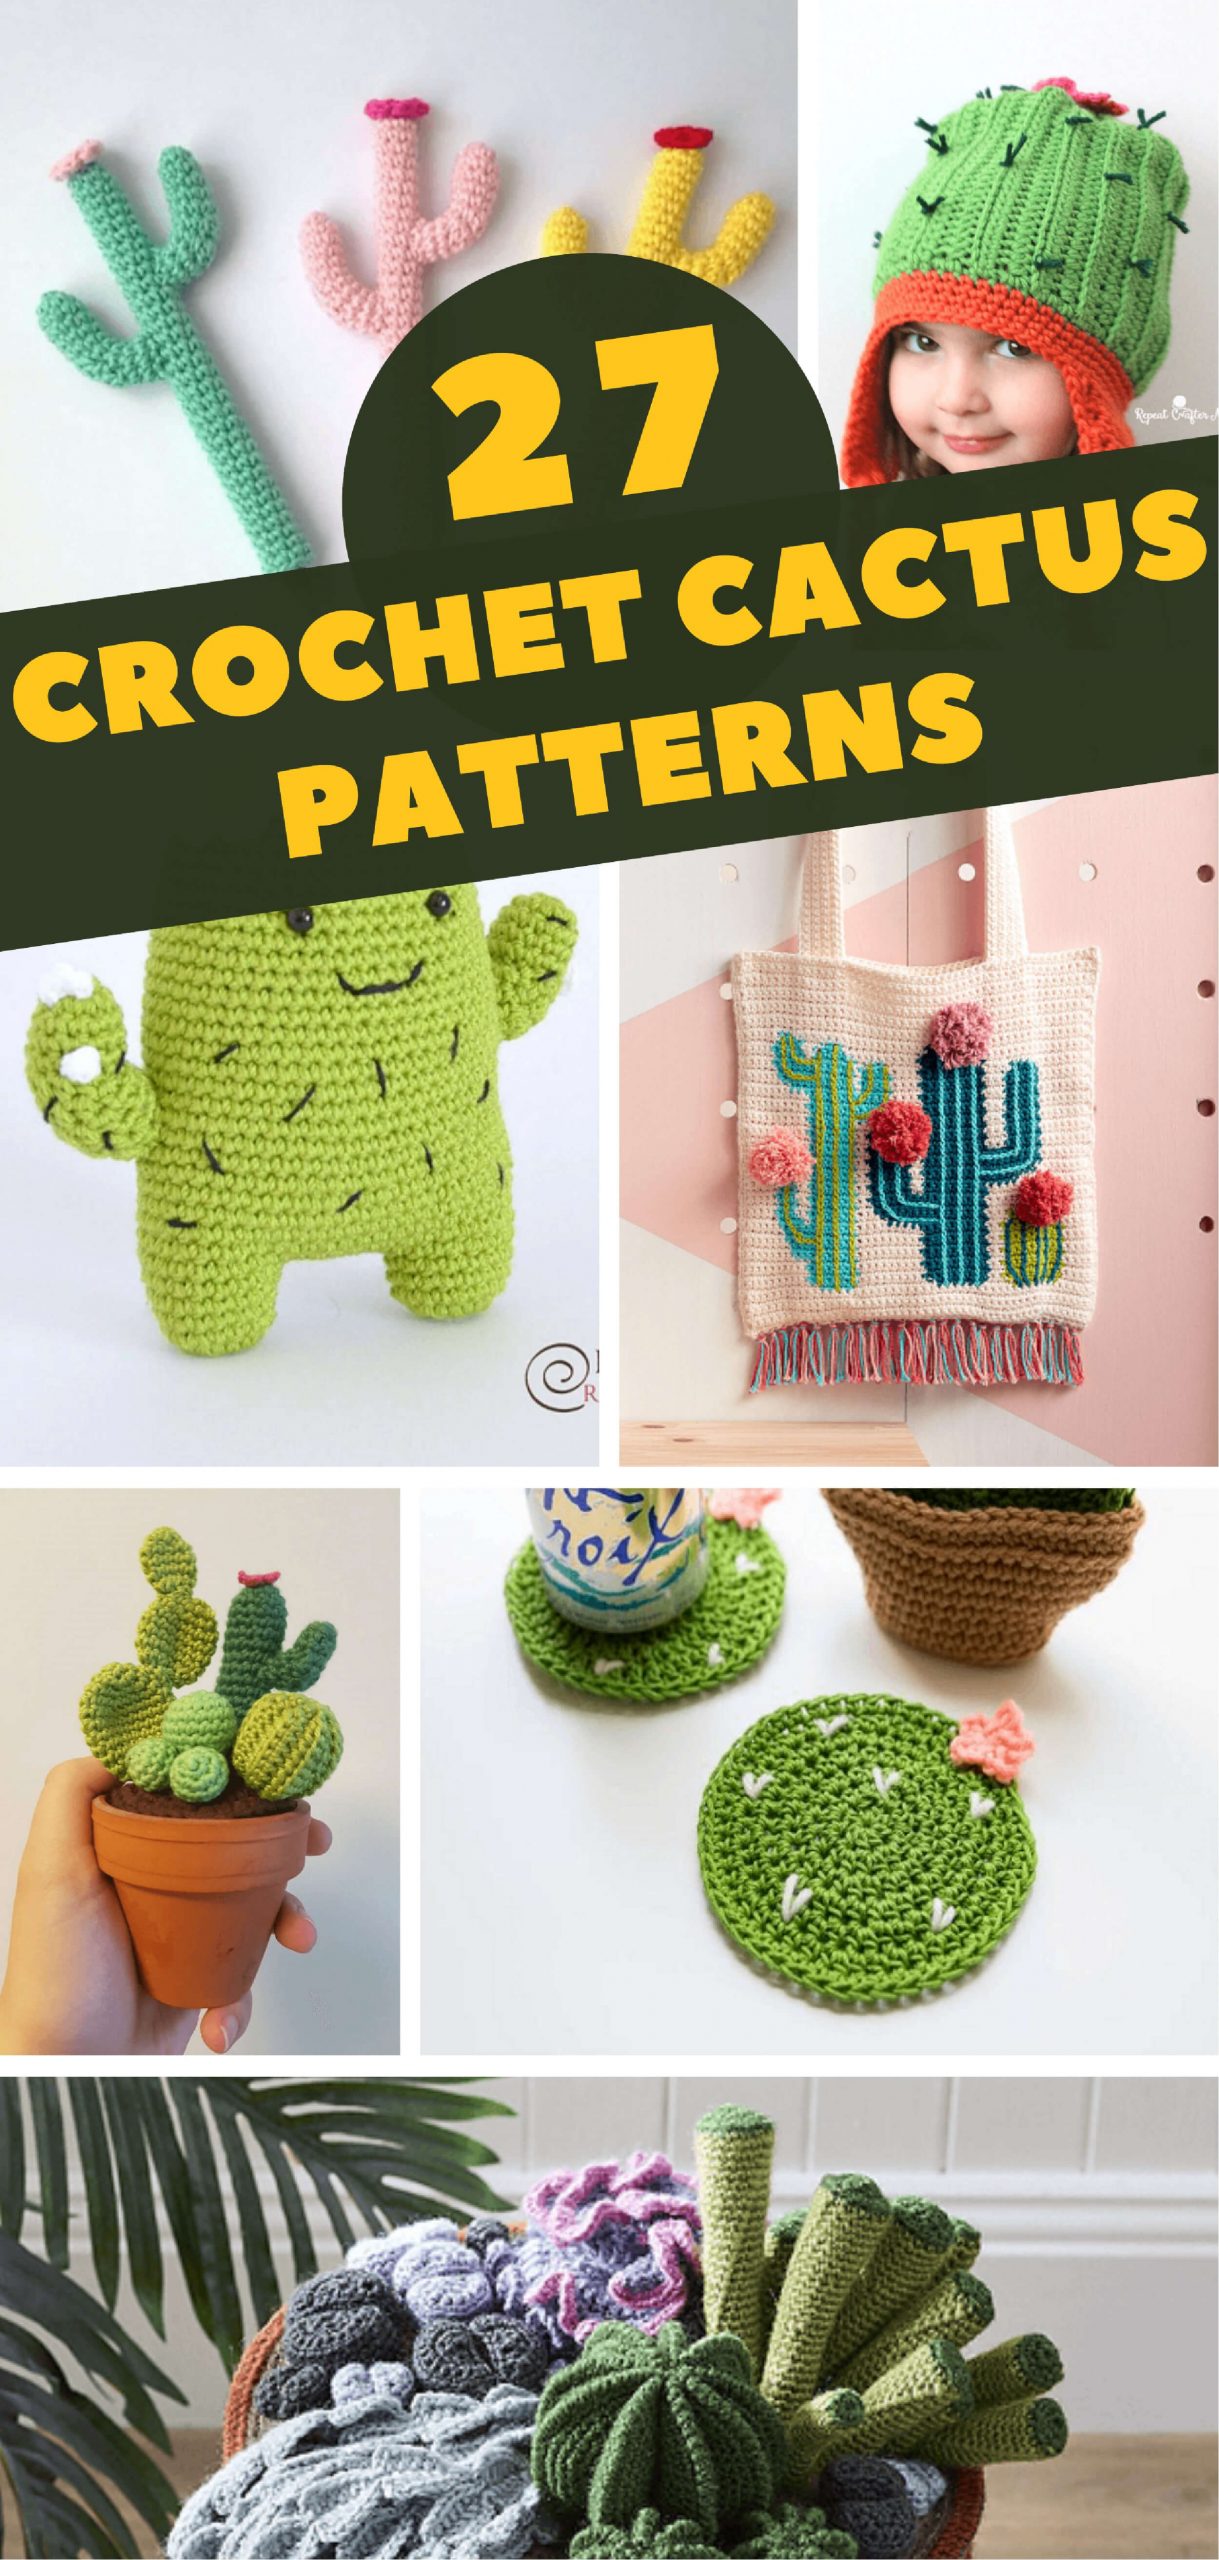 42 Crochet Cactus and Crochet Succulent Patterns - Crochet News